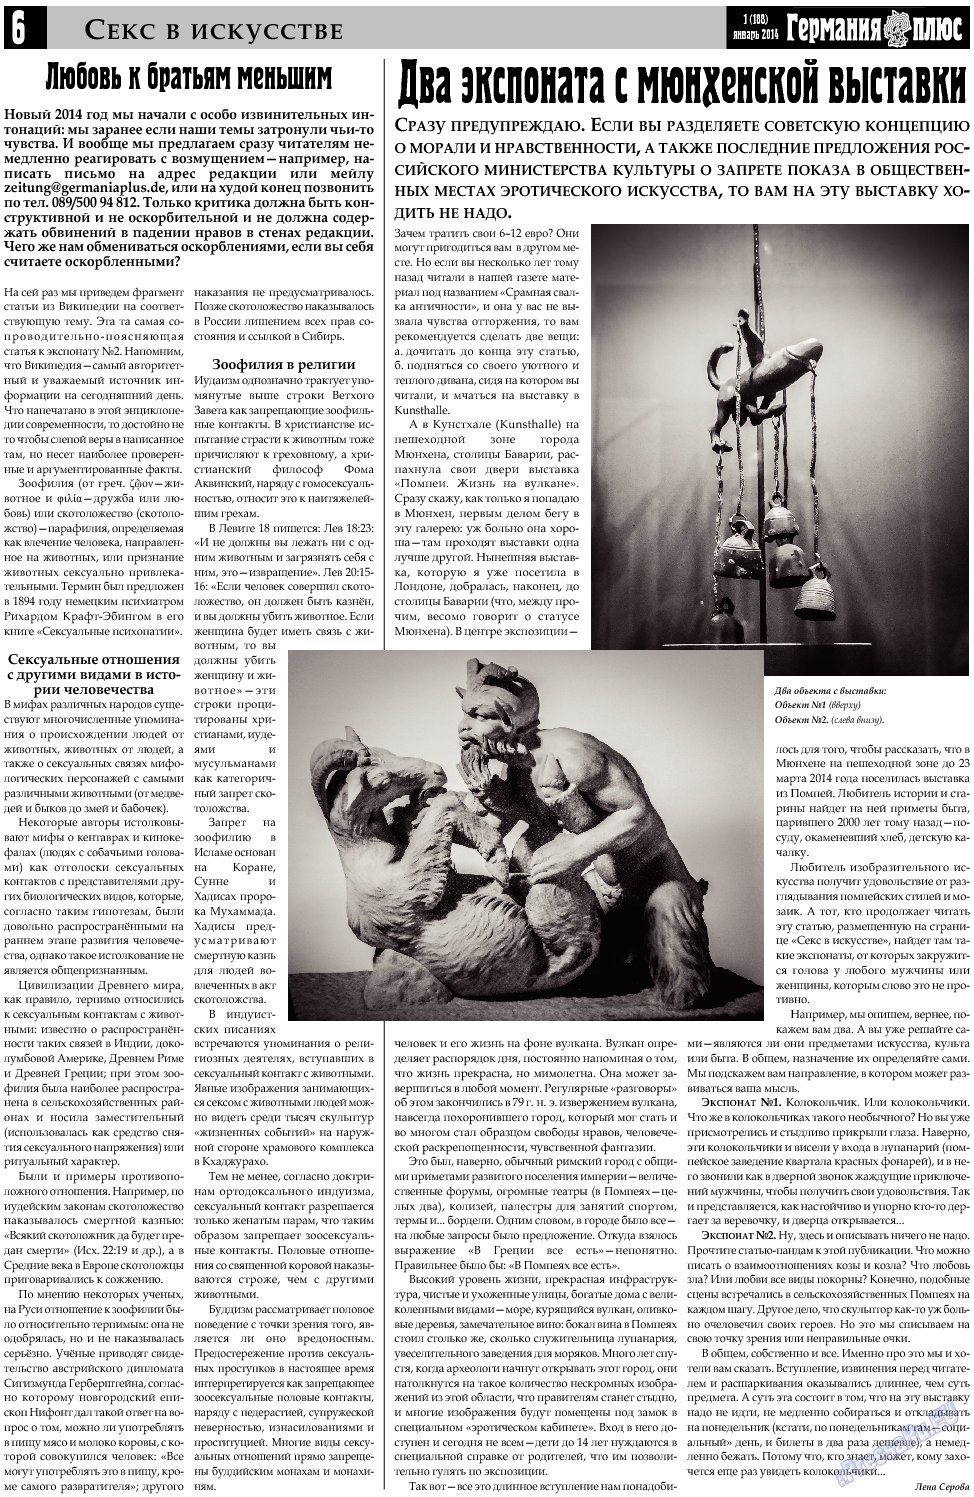 Германия плюс, газета. 2014 №1 стр.6